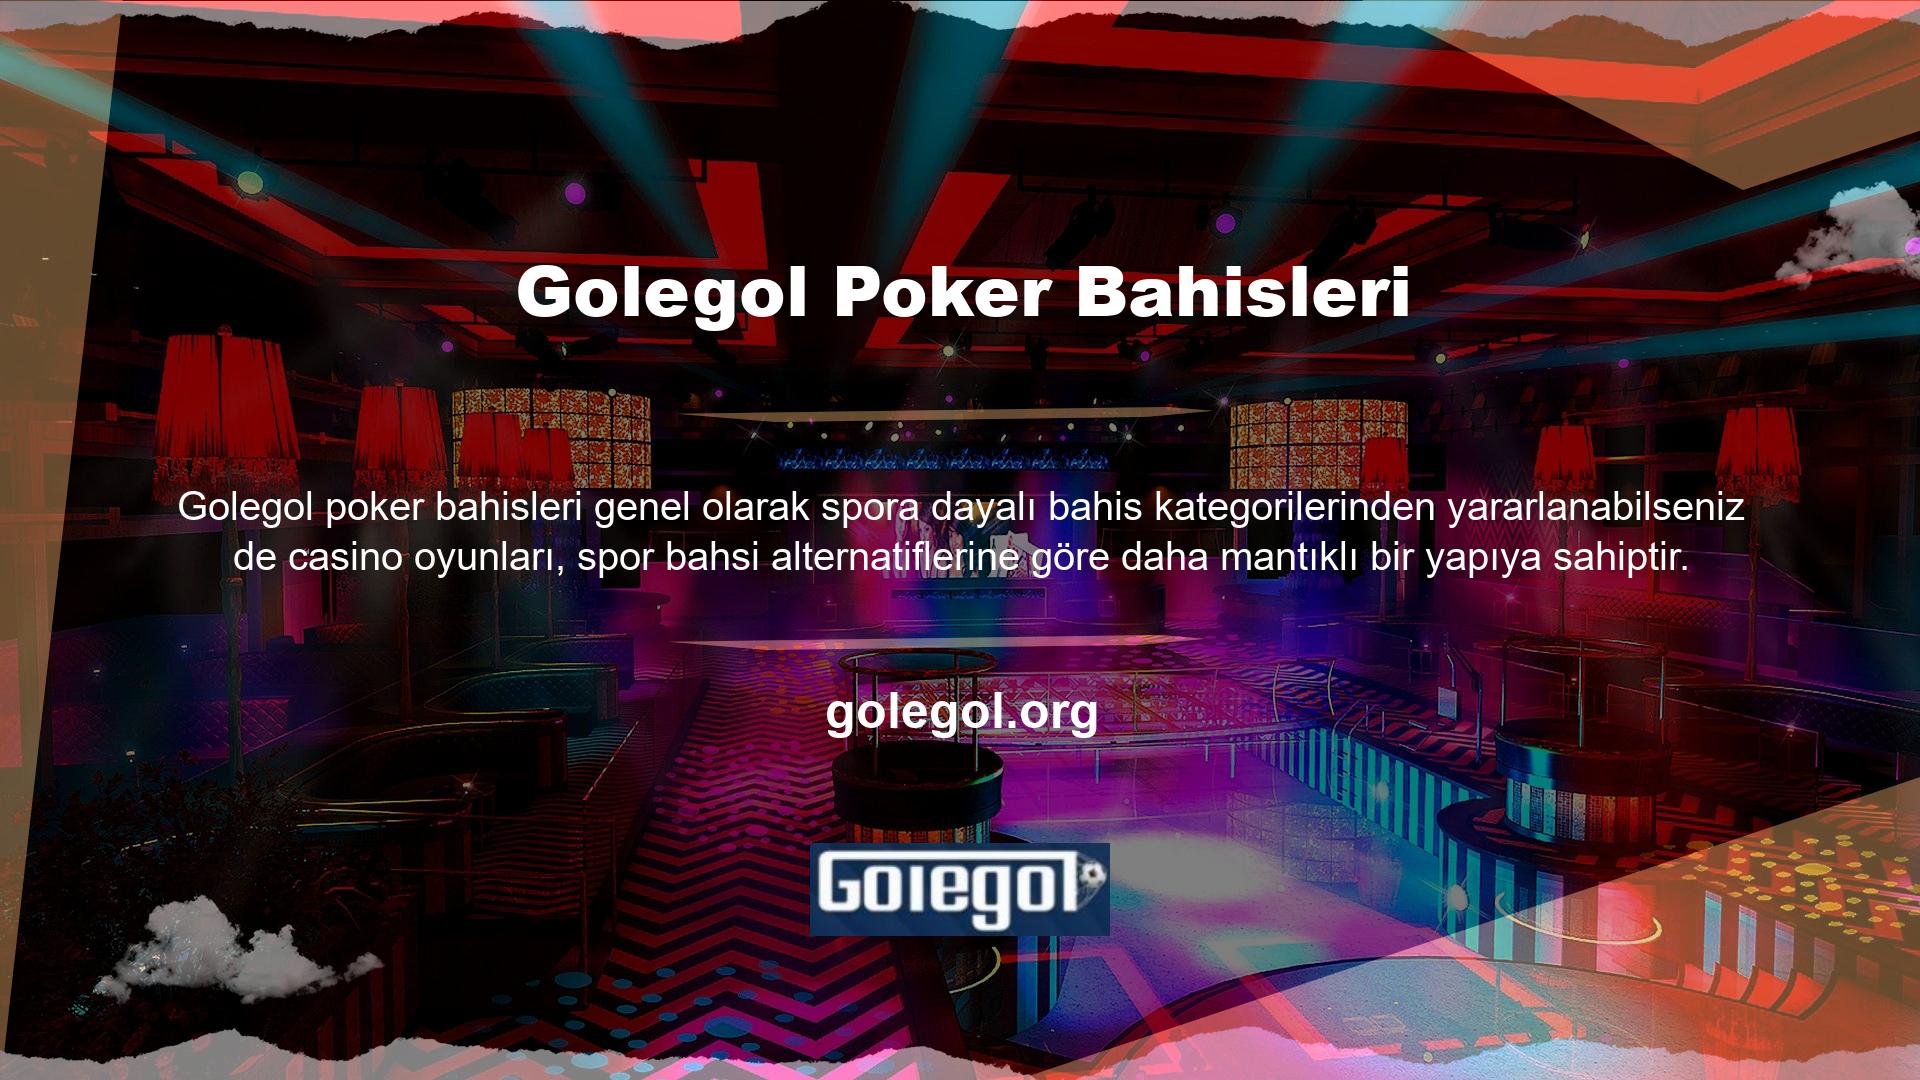 Golegol bahis sitesi içerisinde bu süreç sıkıntılı olurken casino oyunları da en mantıklı yapı ile oynanmakta ve çok çeşitli bahisçilere fayda sağlaması da ön planda yer almaktadır